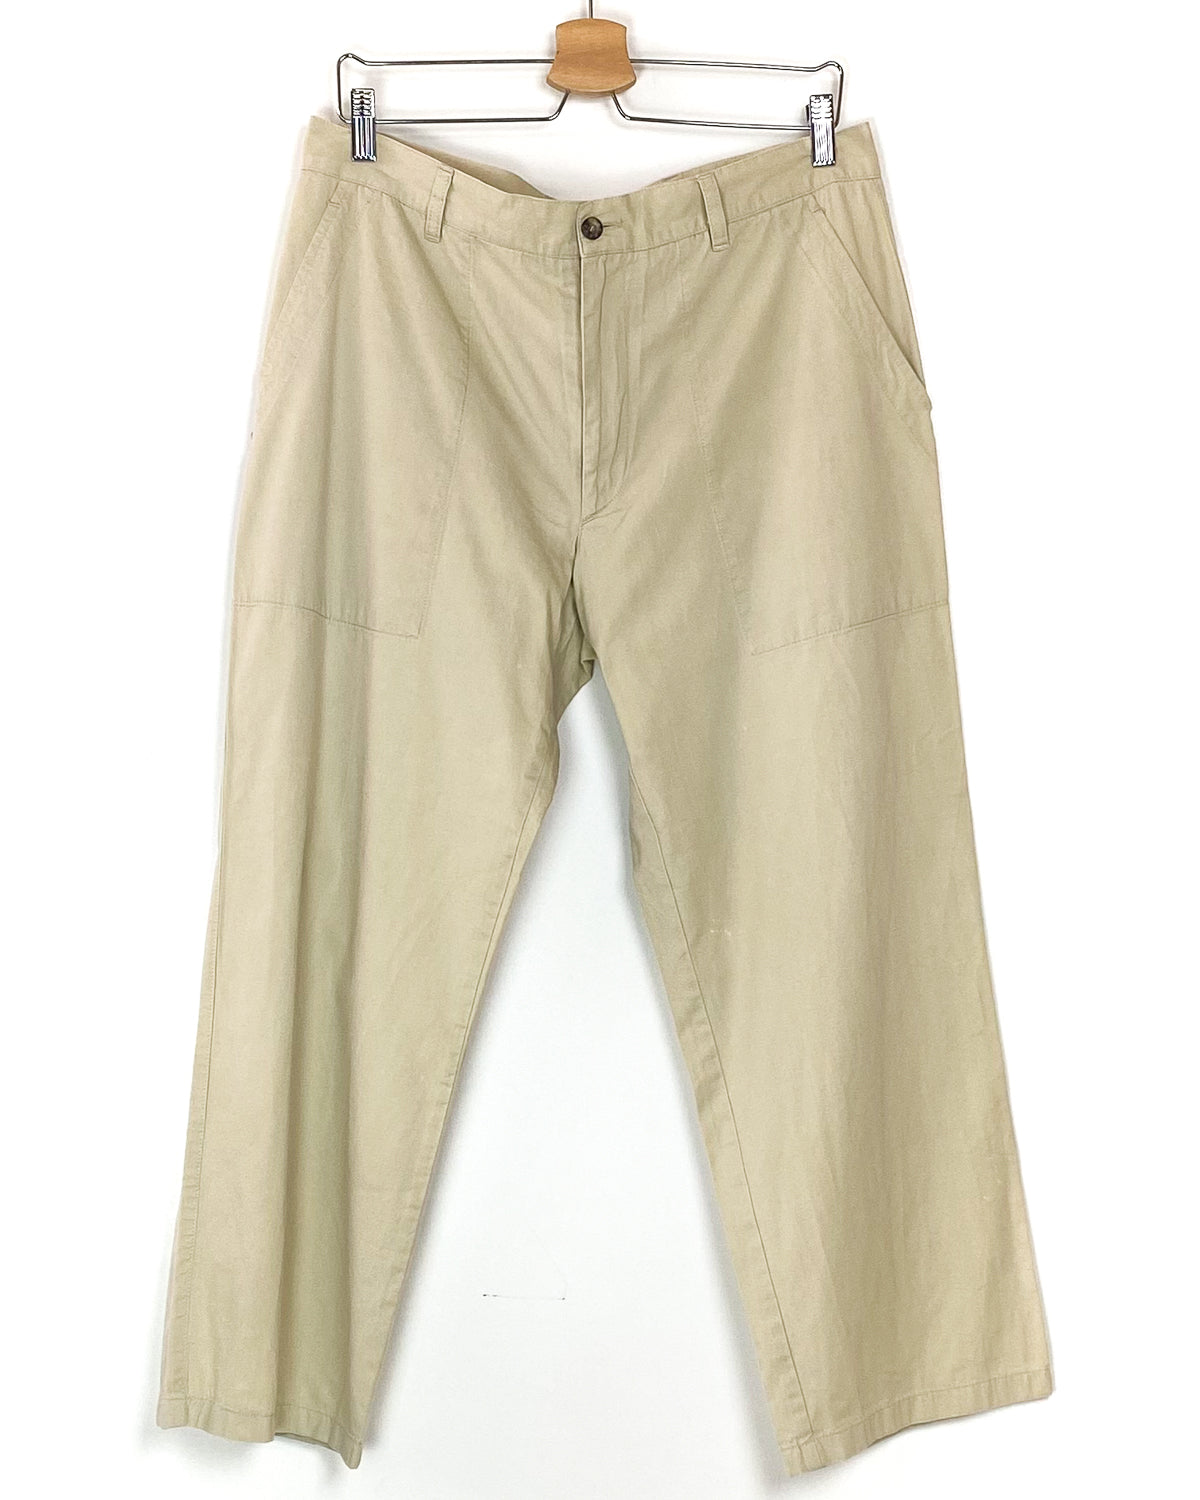 Pantalone Vintage Corto Taglia 52